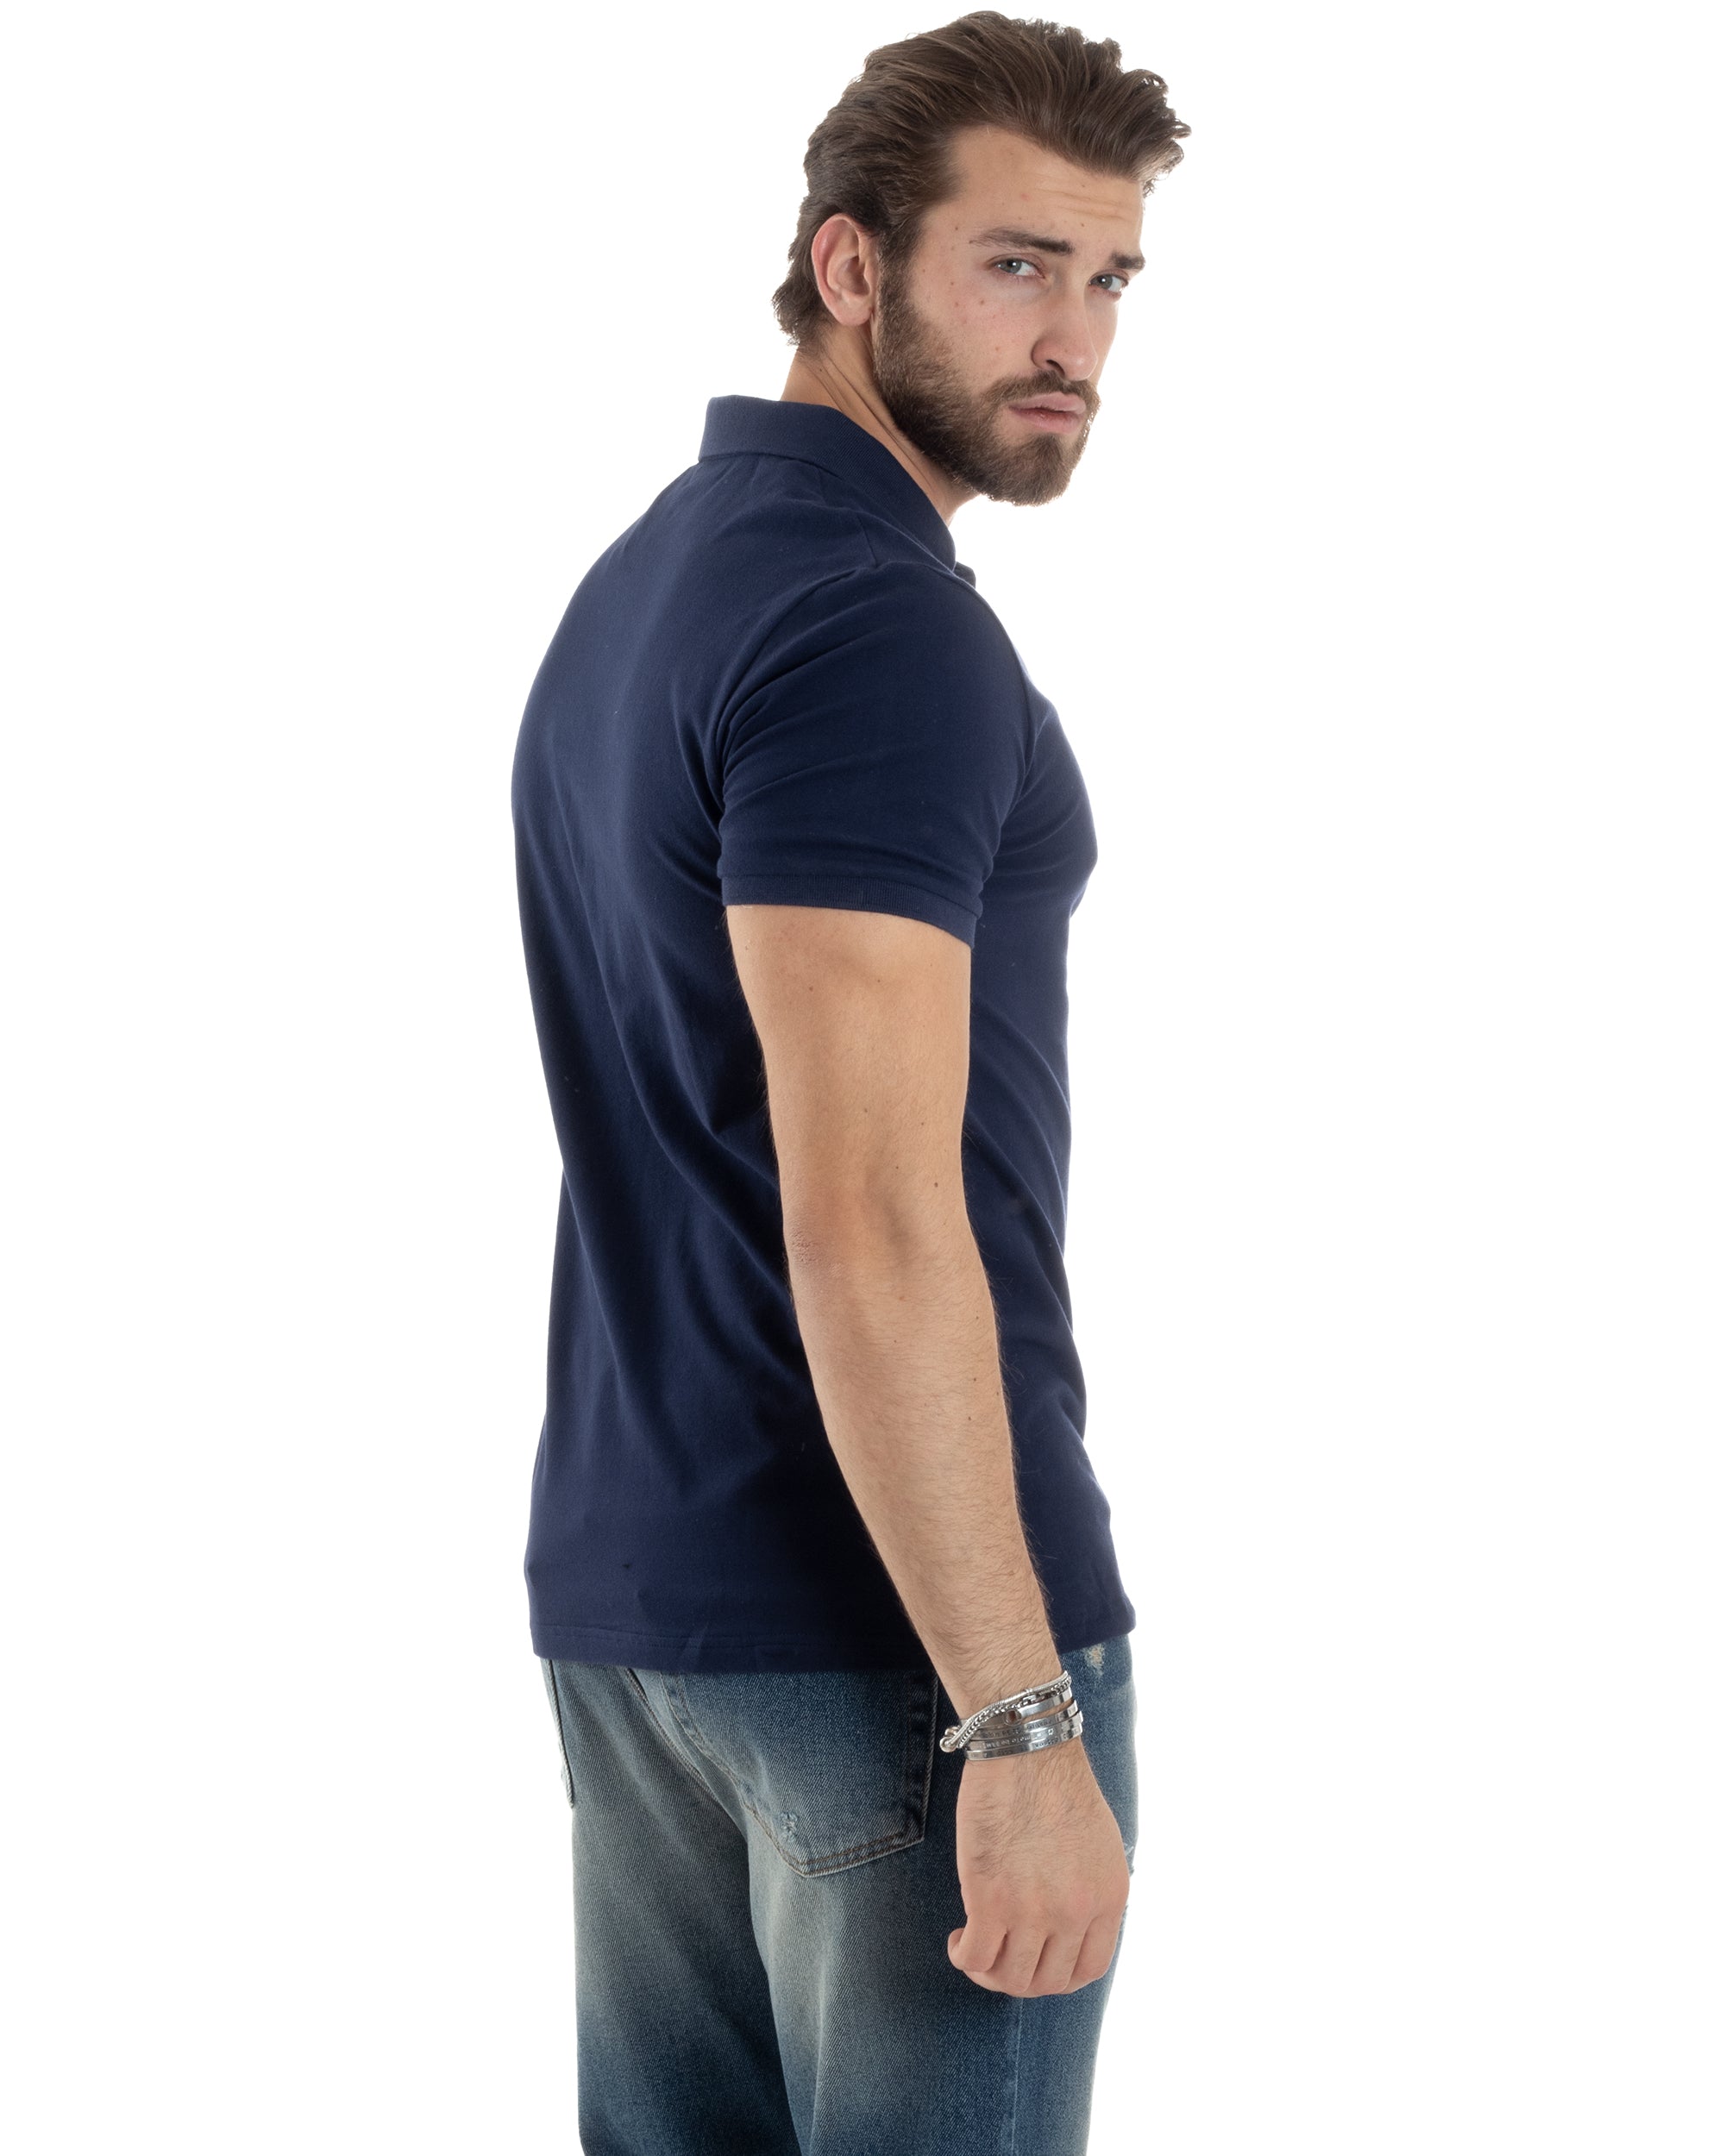 Polo Uomo Manica Corta T-shirt Con Colletto Bottoncini Basic Slim Fit Casual Tinta Unita Blu GIOSAL-TS3046A